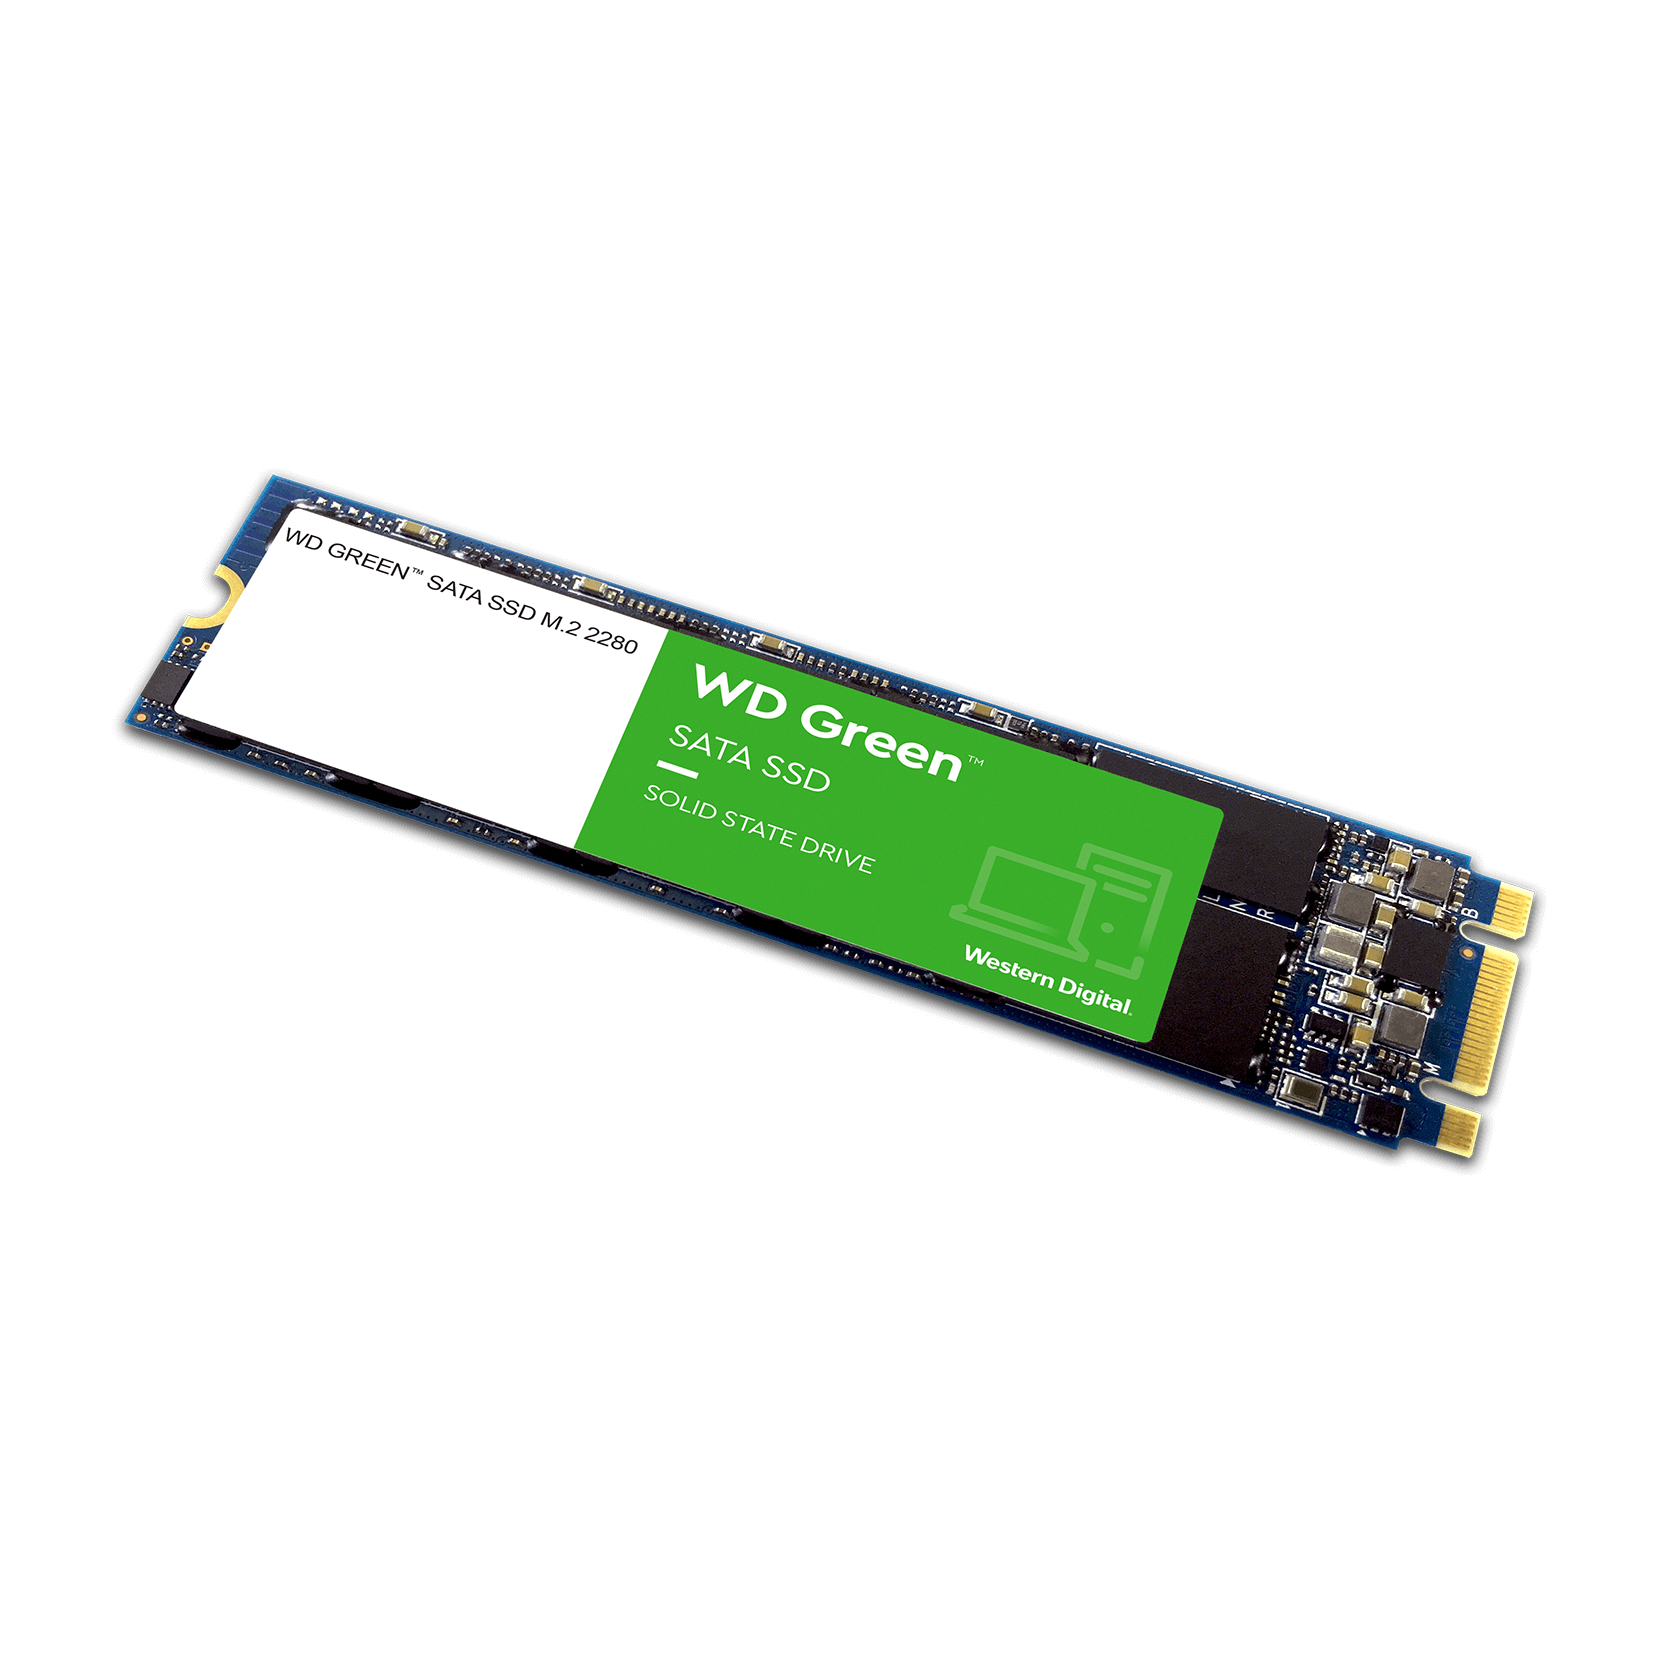 WD Green 240GB M.2 Internal SATA SSD - The Pi Hut